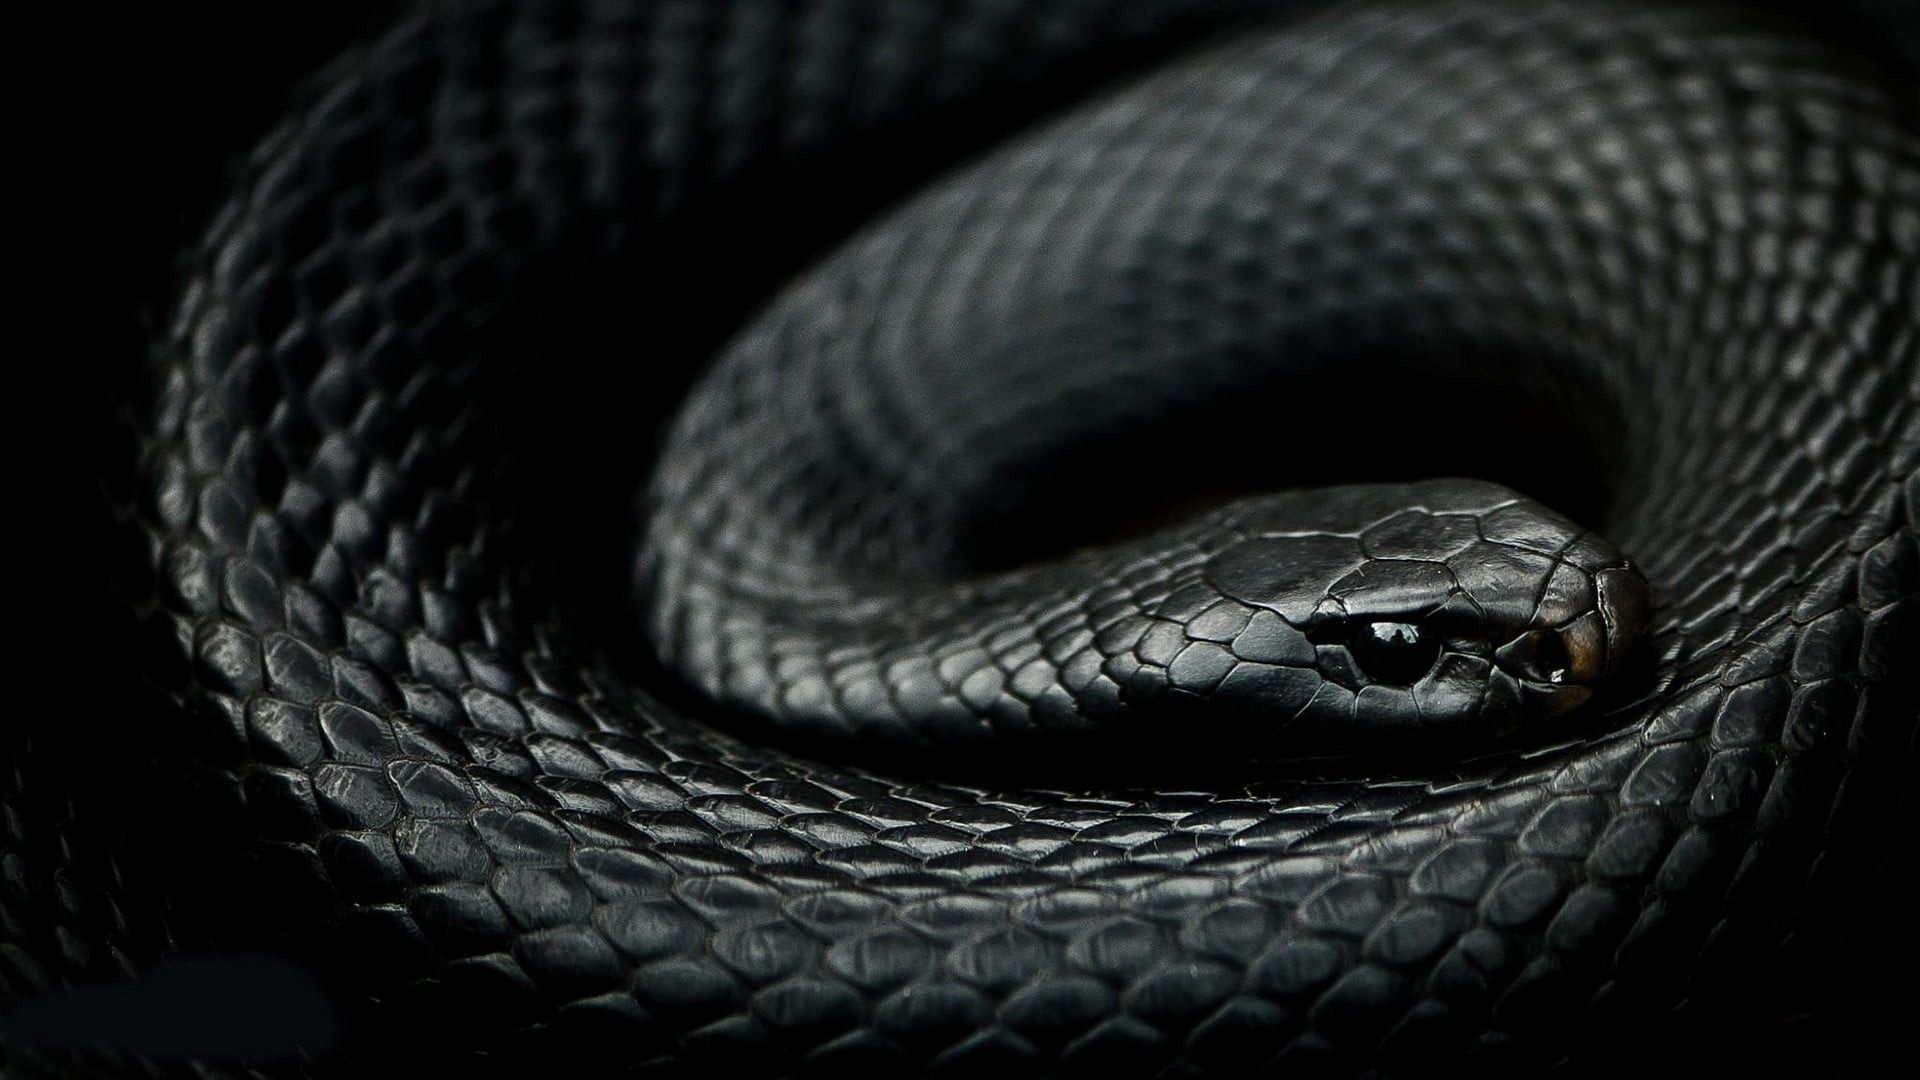 Serpent's slither, Sleek predator, Intriguing background, Sinister beauty, 1920x1080 Full HD Desktop